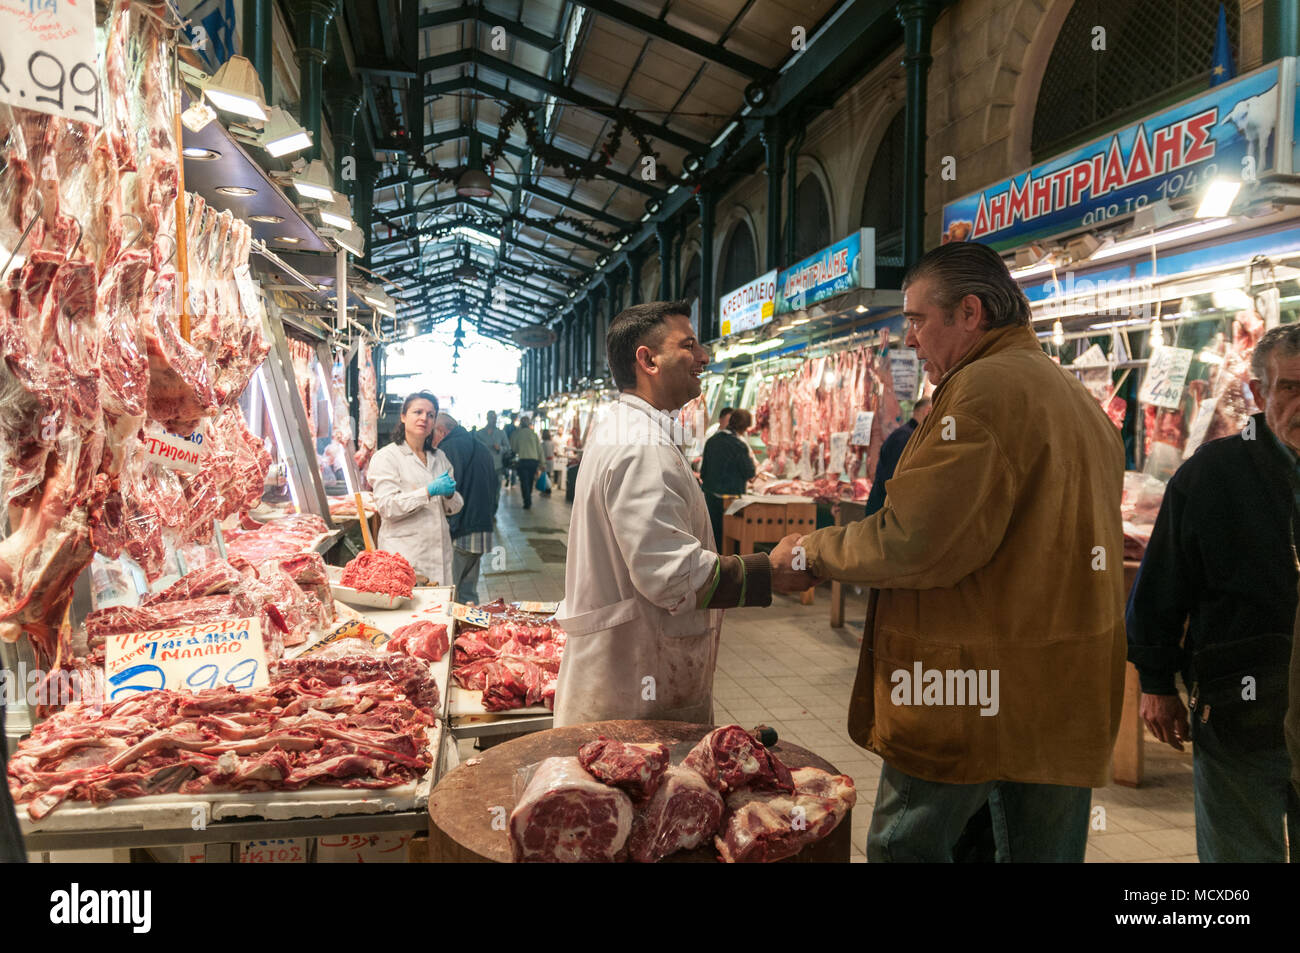 Athen, Griechenland - 29. April 2018: Ein Händler begrüßt einen Kunden an seinem Fleisch in der berühmten griechischen Markt in Athen stand. Stockfoto